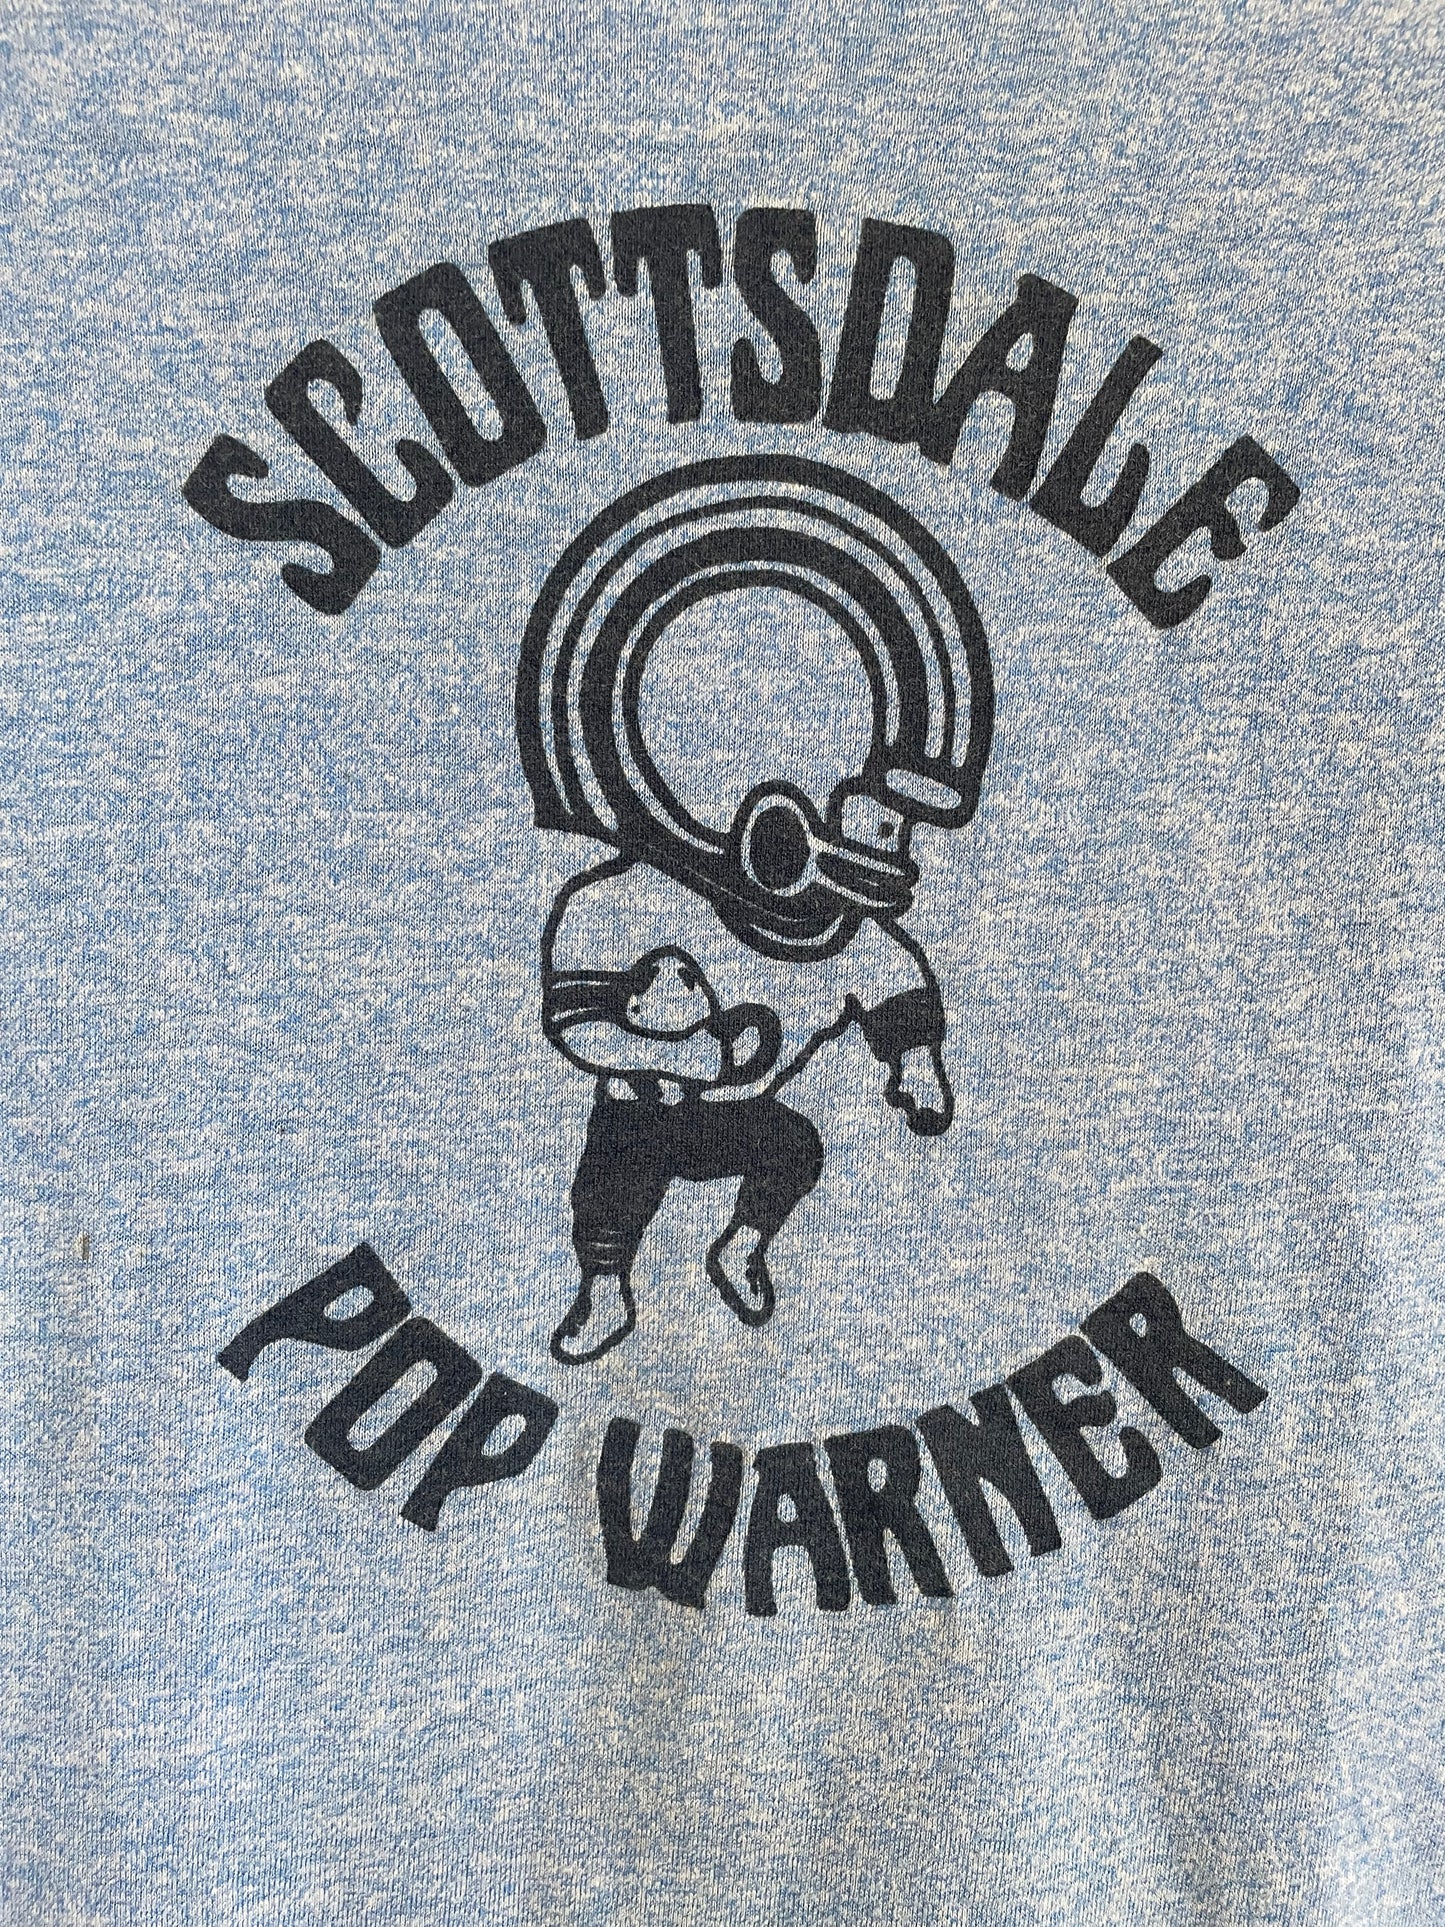 70s/80s Scottsdale Pop Warner Football Tee